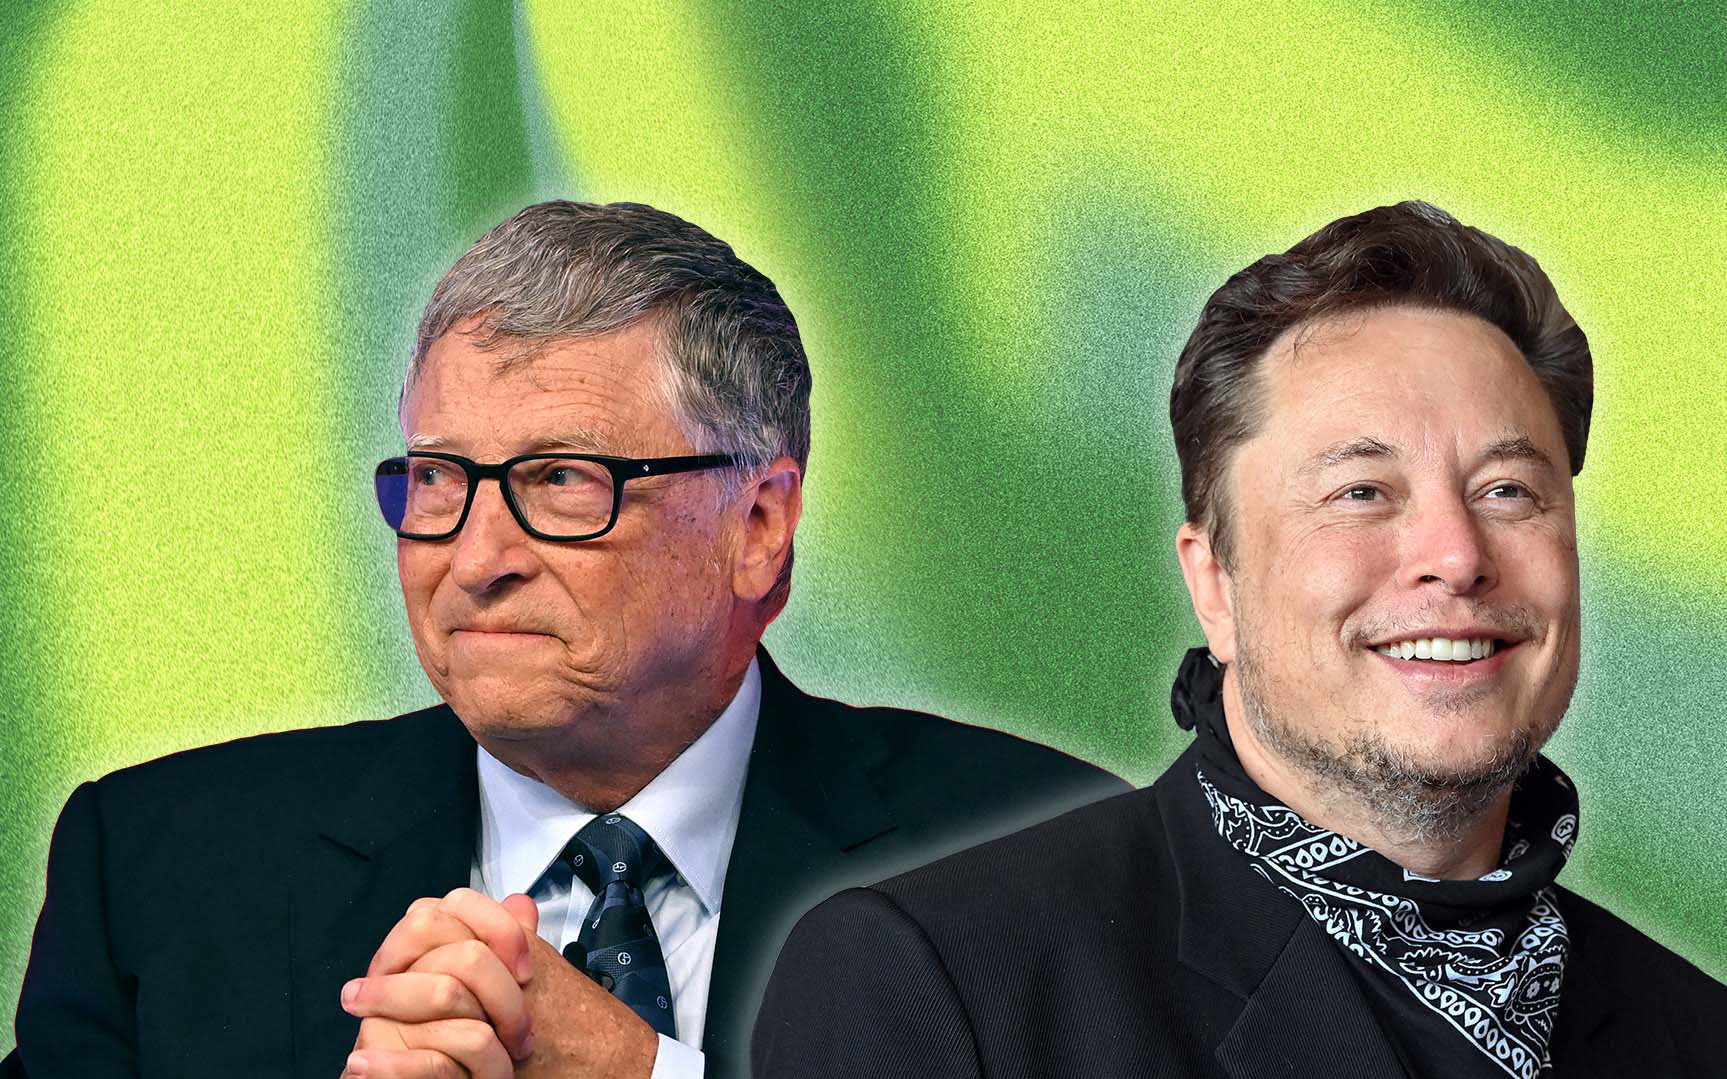 Trước khi trở thành tỷ phú, Elon Musk, Bill Gates cũng sai lầm đến mức sụp đổ cả công ty nhưng CÁCH ĐỐI DIỆN VỚI THẤT BẠI mới là điều đáng học hỏi